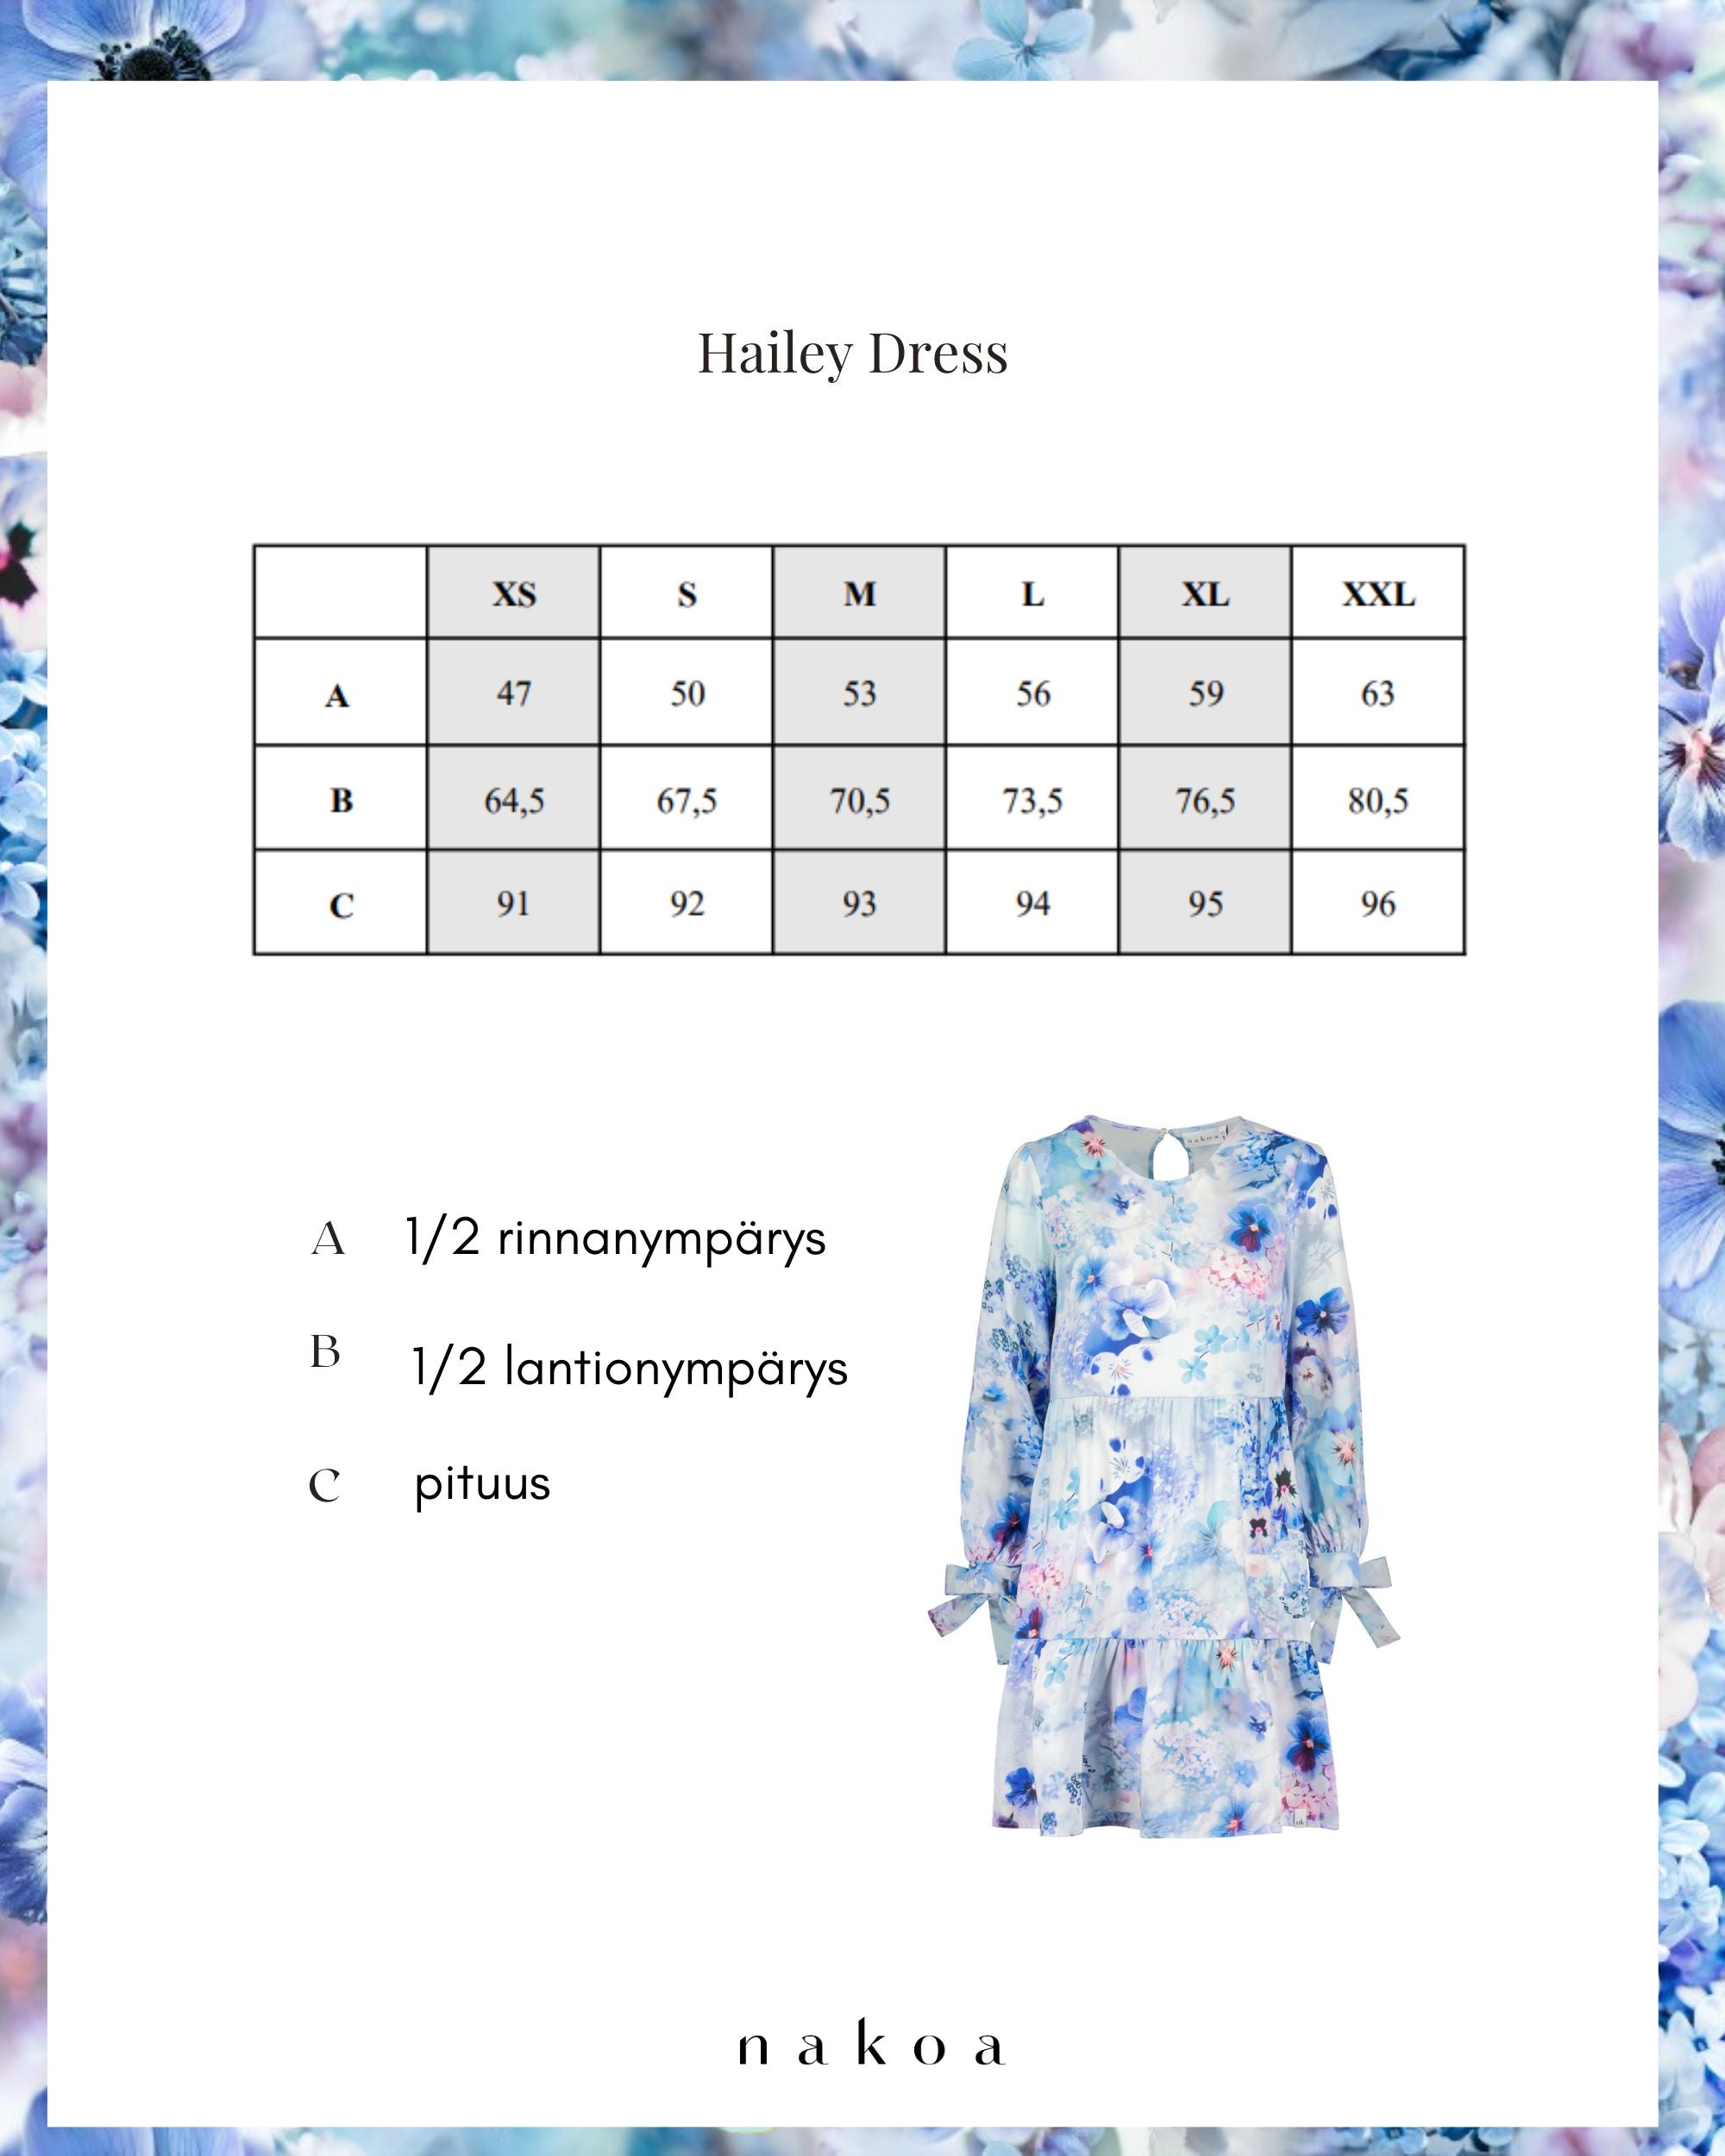 Hailey Dress, Lush